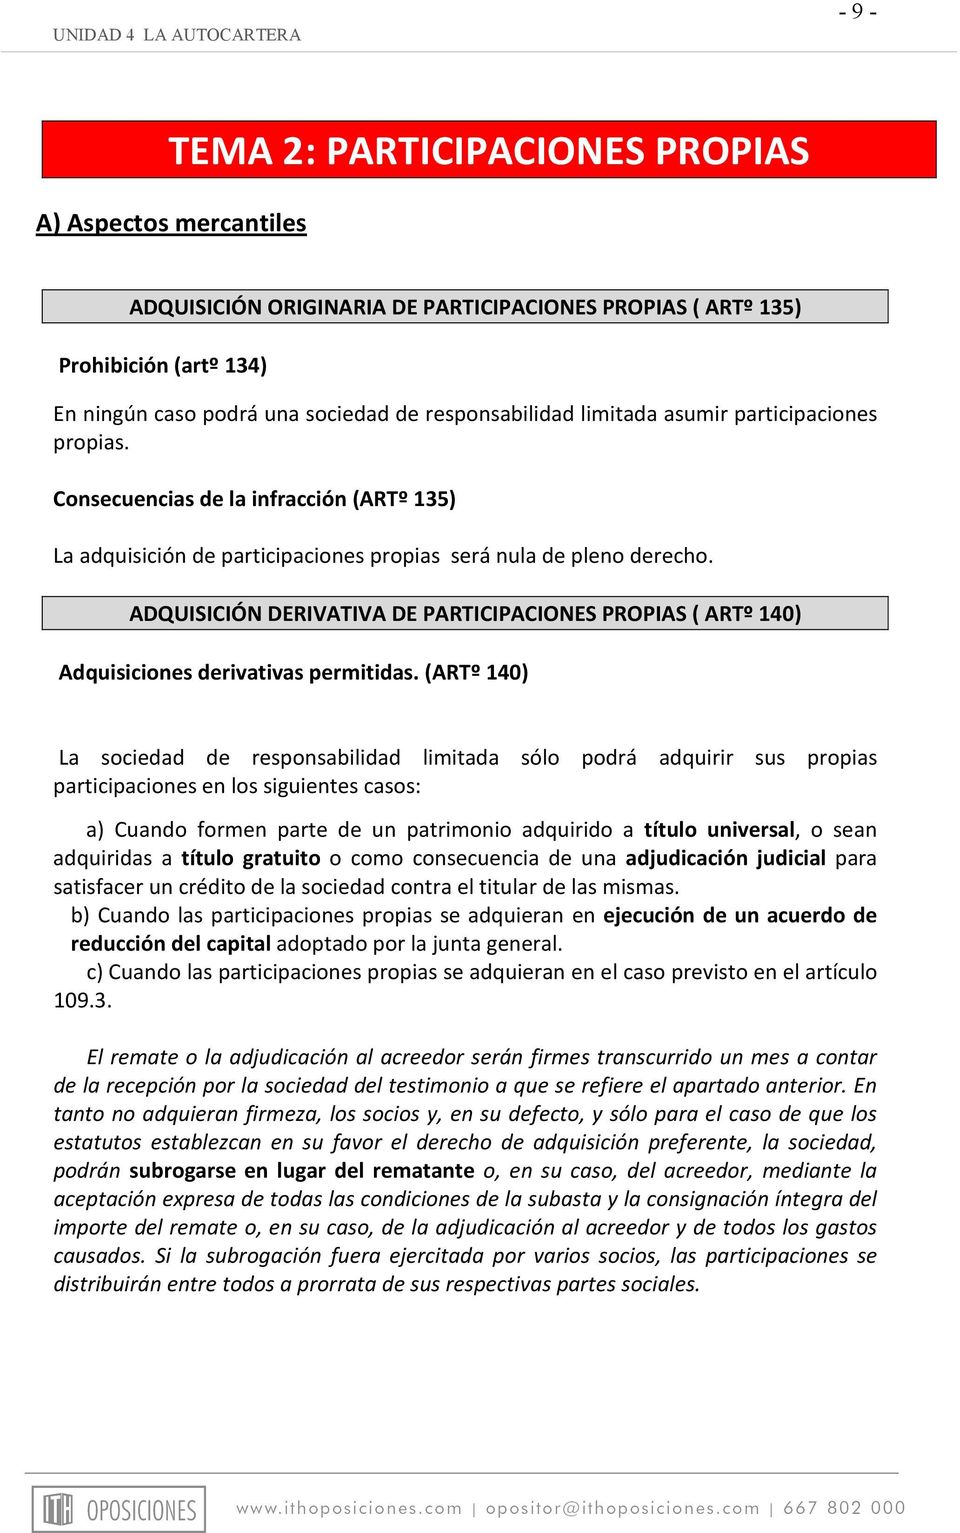 ADQUISICIÓN DERIVATIVA DE PARTICIPACIONES PROPIAS ( ARTº 140) Adquisiciones derivativas permitidas.